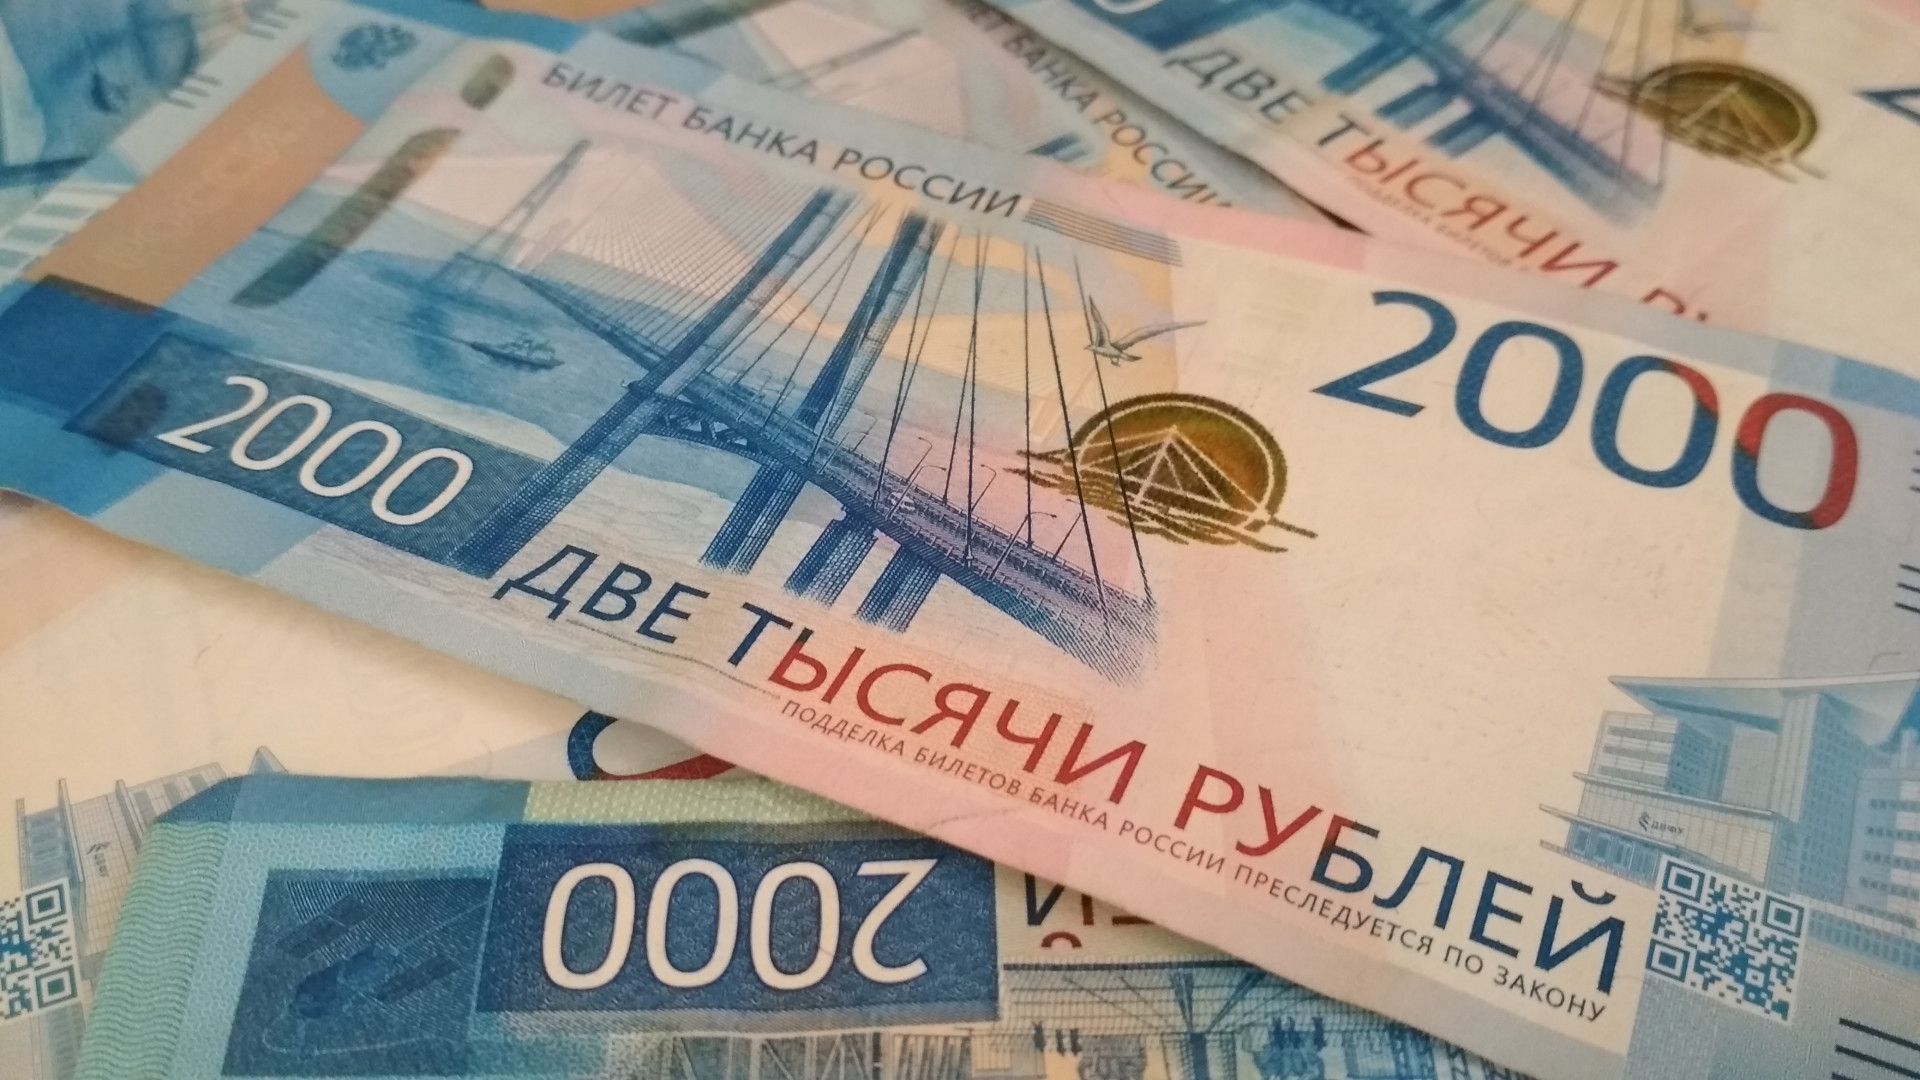 300 рос рублей. 90 Тенге в рублях. Ставки по вкладам населения увеличивают российские банки.